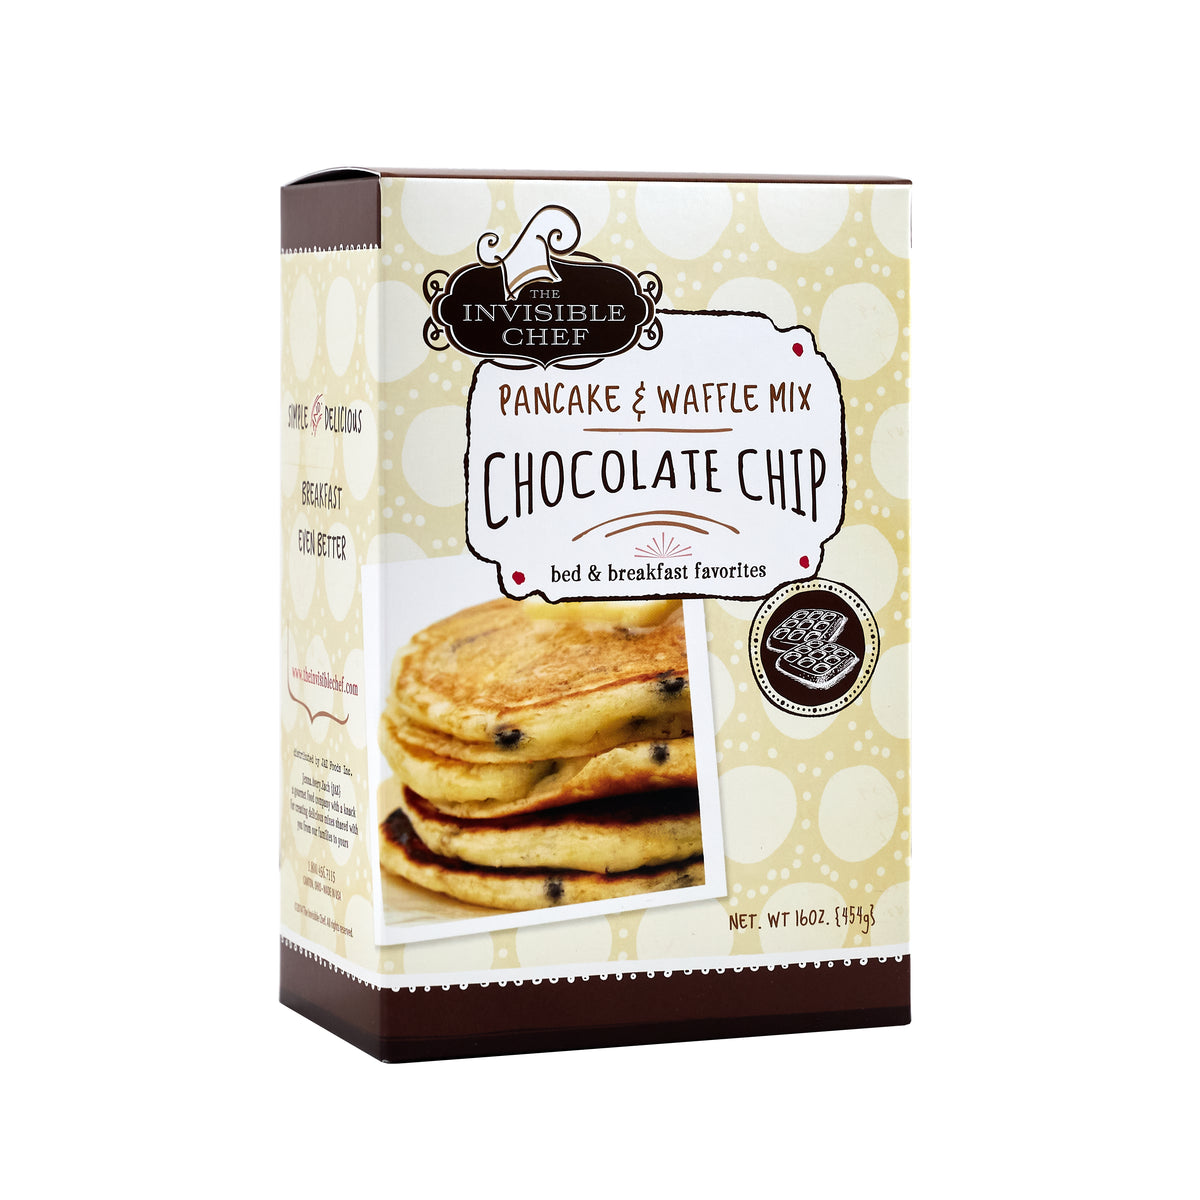 Partake Waffle & Pancake Mix Chocolate Chip - BESTIES Vegan Paradise